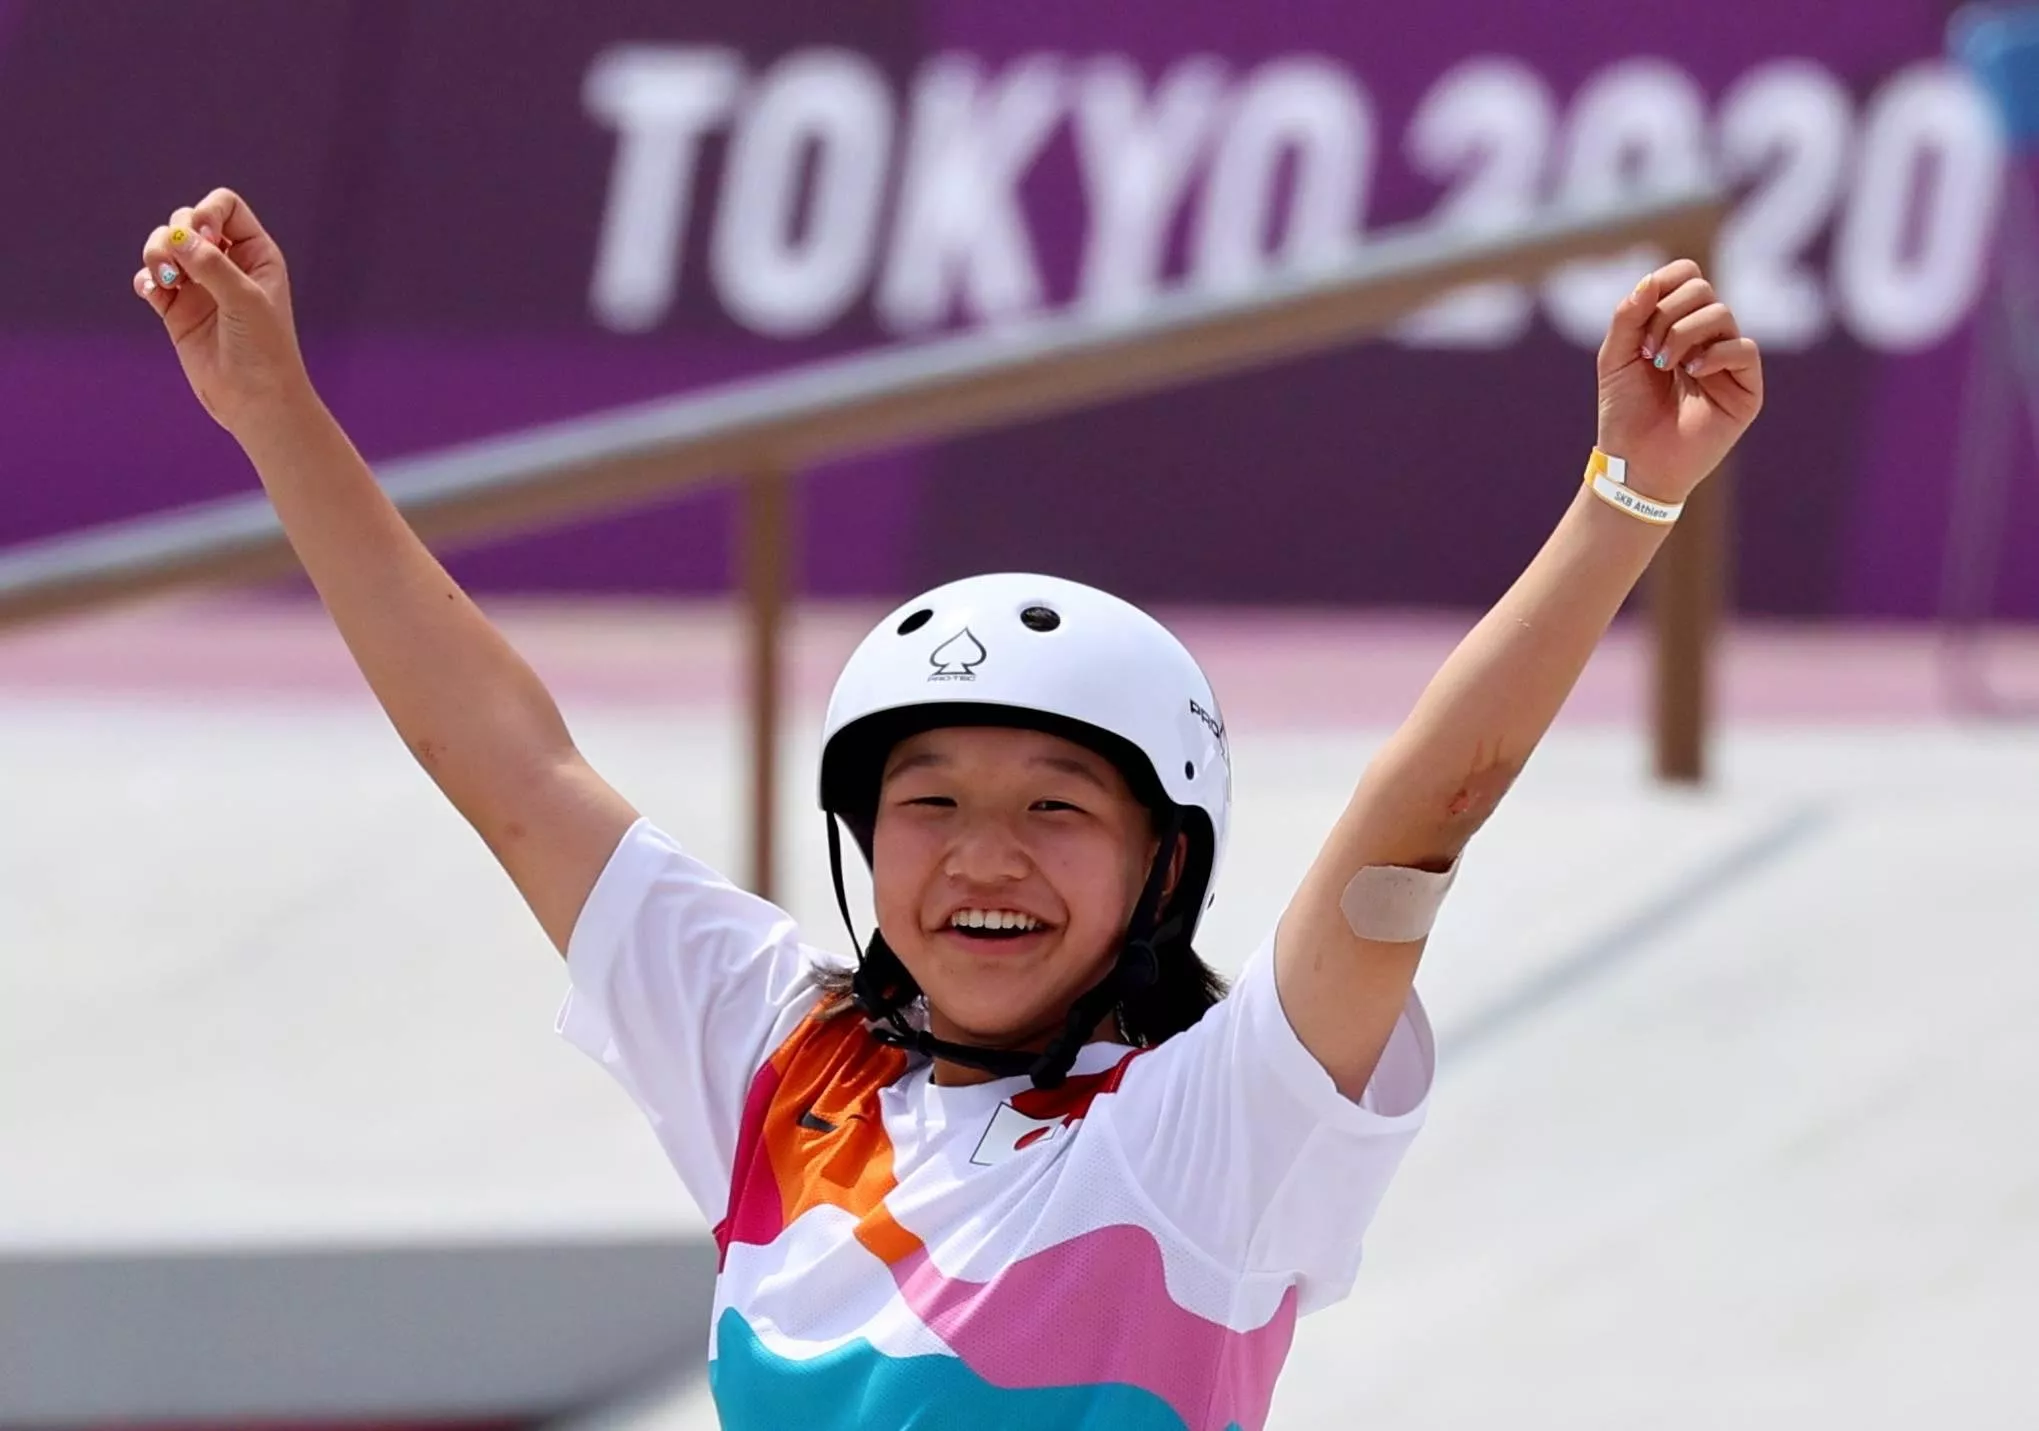 النساء يحقّقن إنجازات لافتة في الالعاب الاولمبية في طوكيو 2020، إليكِ أبرزها وأهم اللحظات